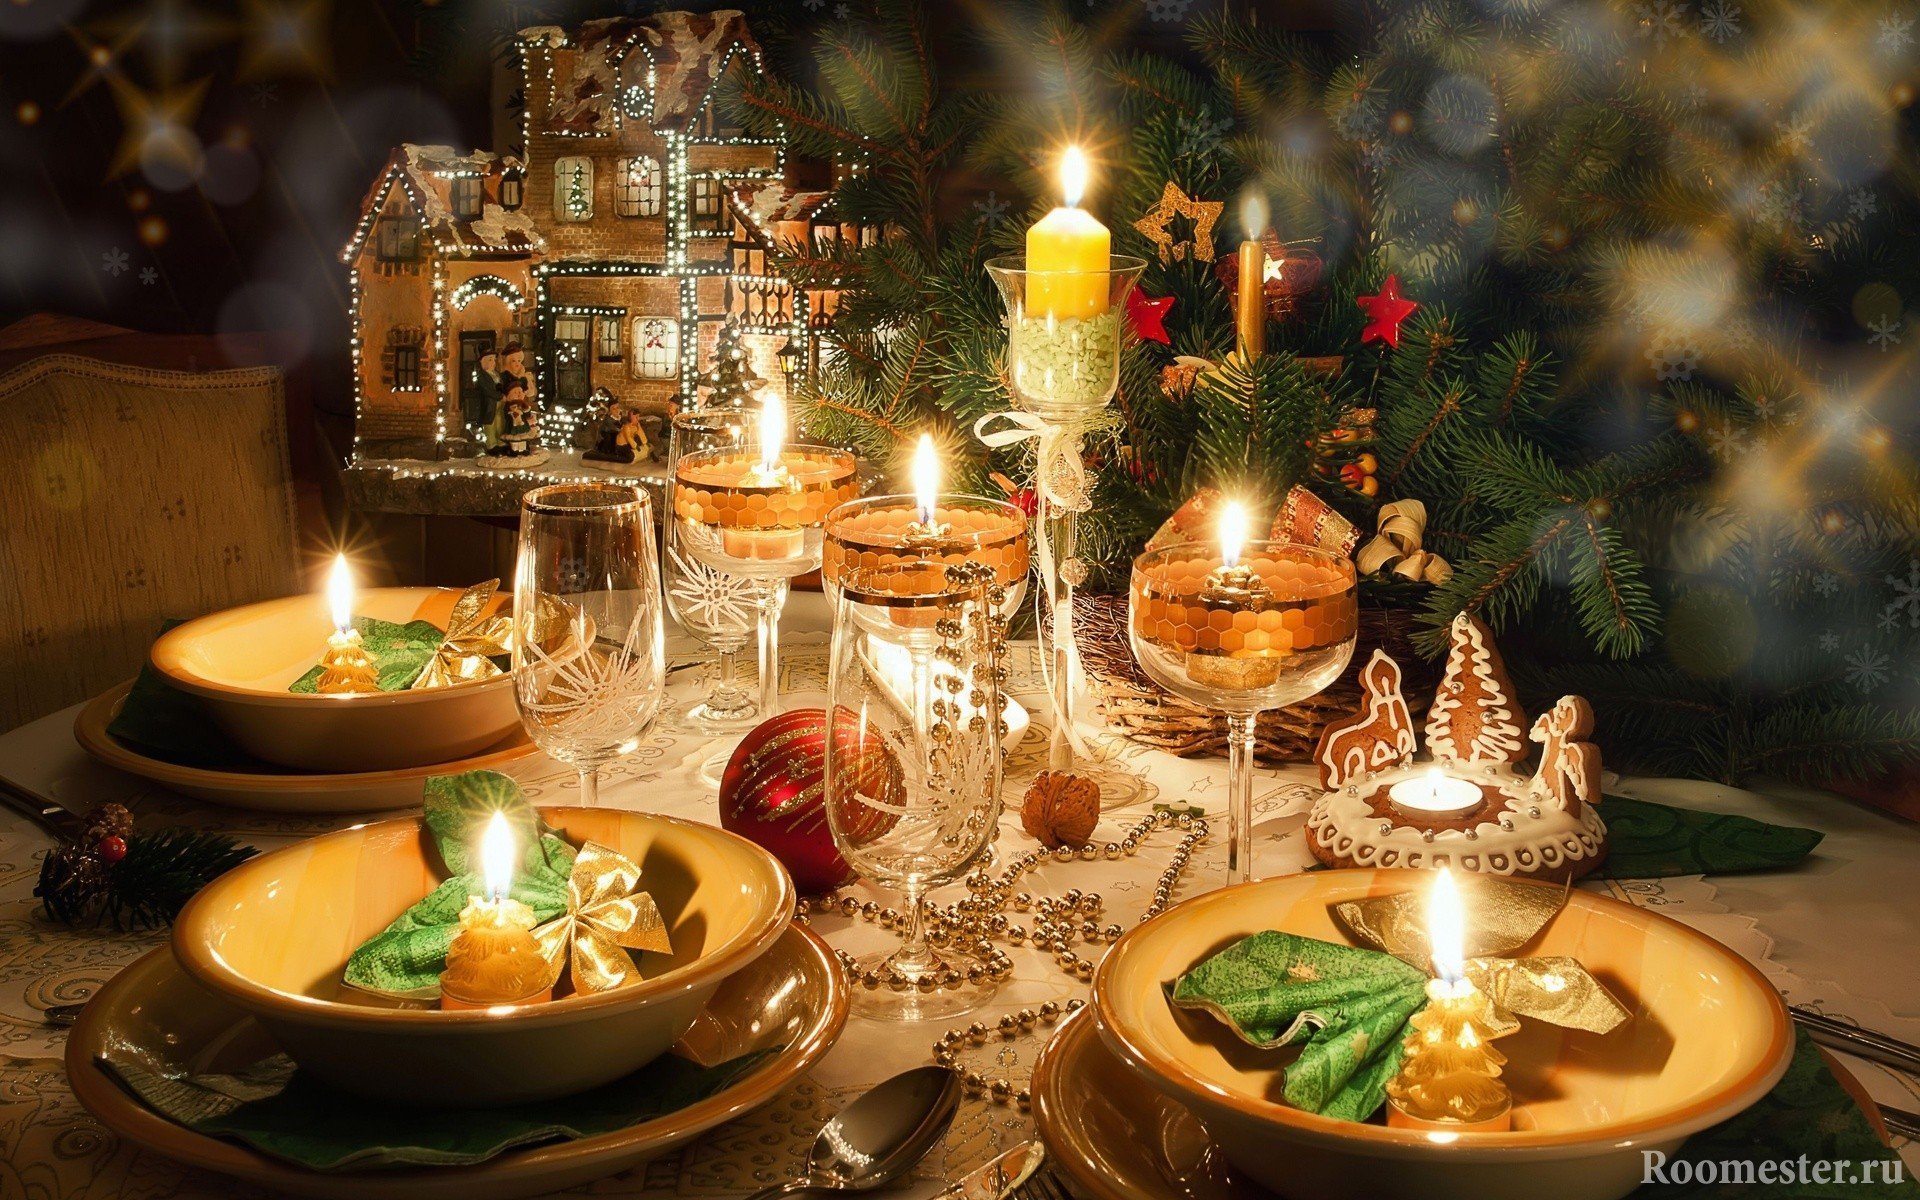 Свечи неотъемлемая часть новогодней сервировки